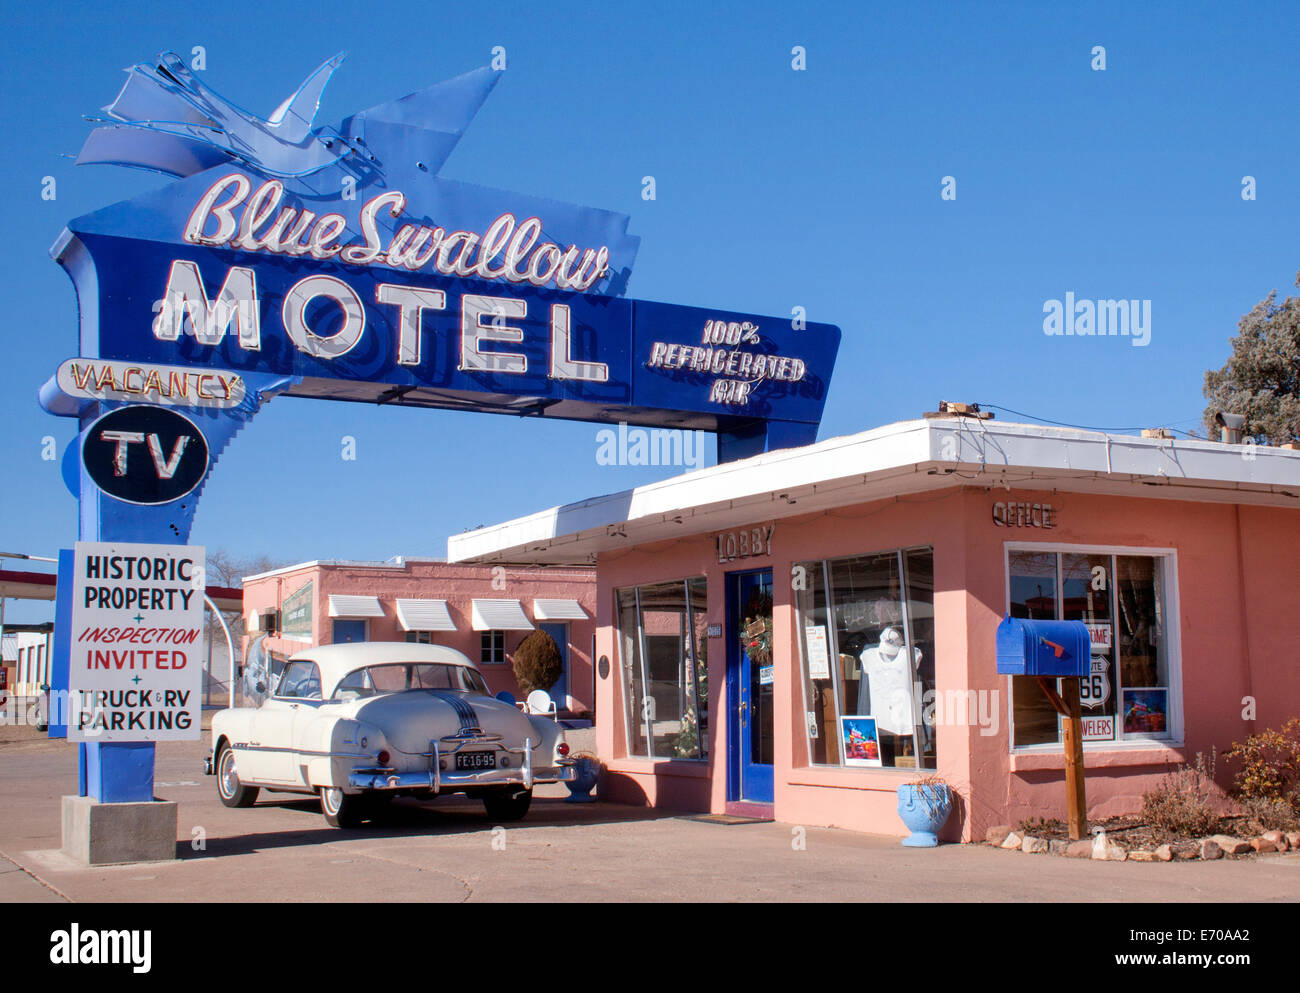 Die Blaue Schwalbe Motel befindet sich auf der alten Route 66 in Tucumcari, New Mexico Stockfoto